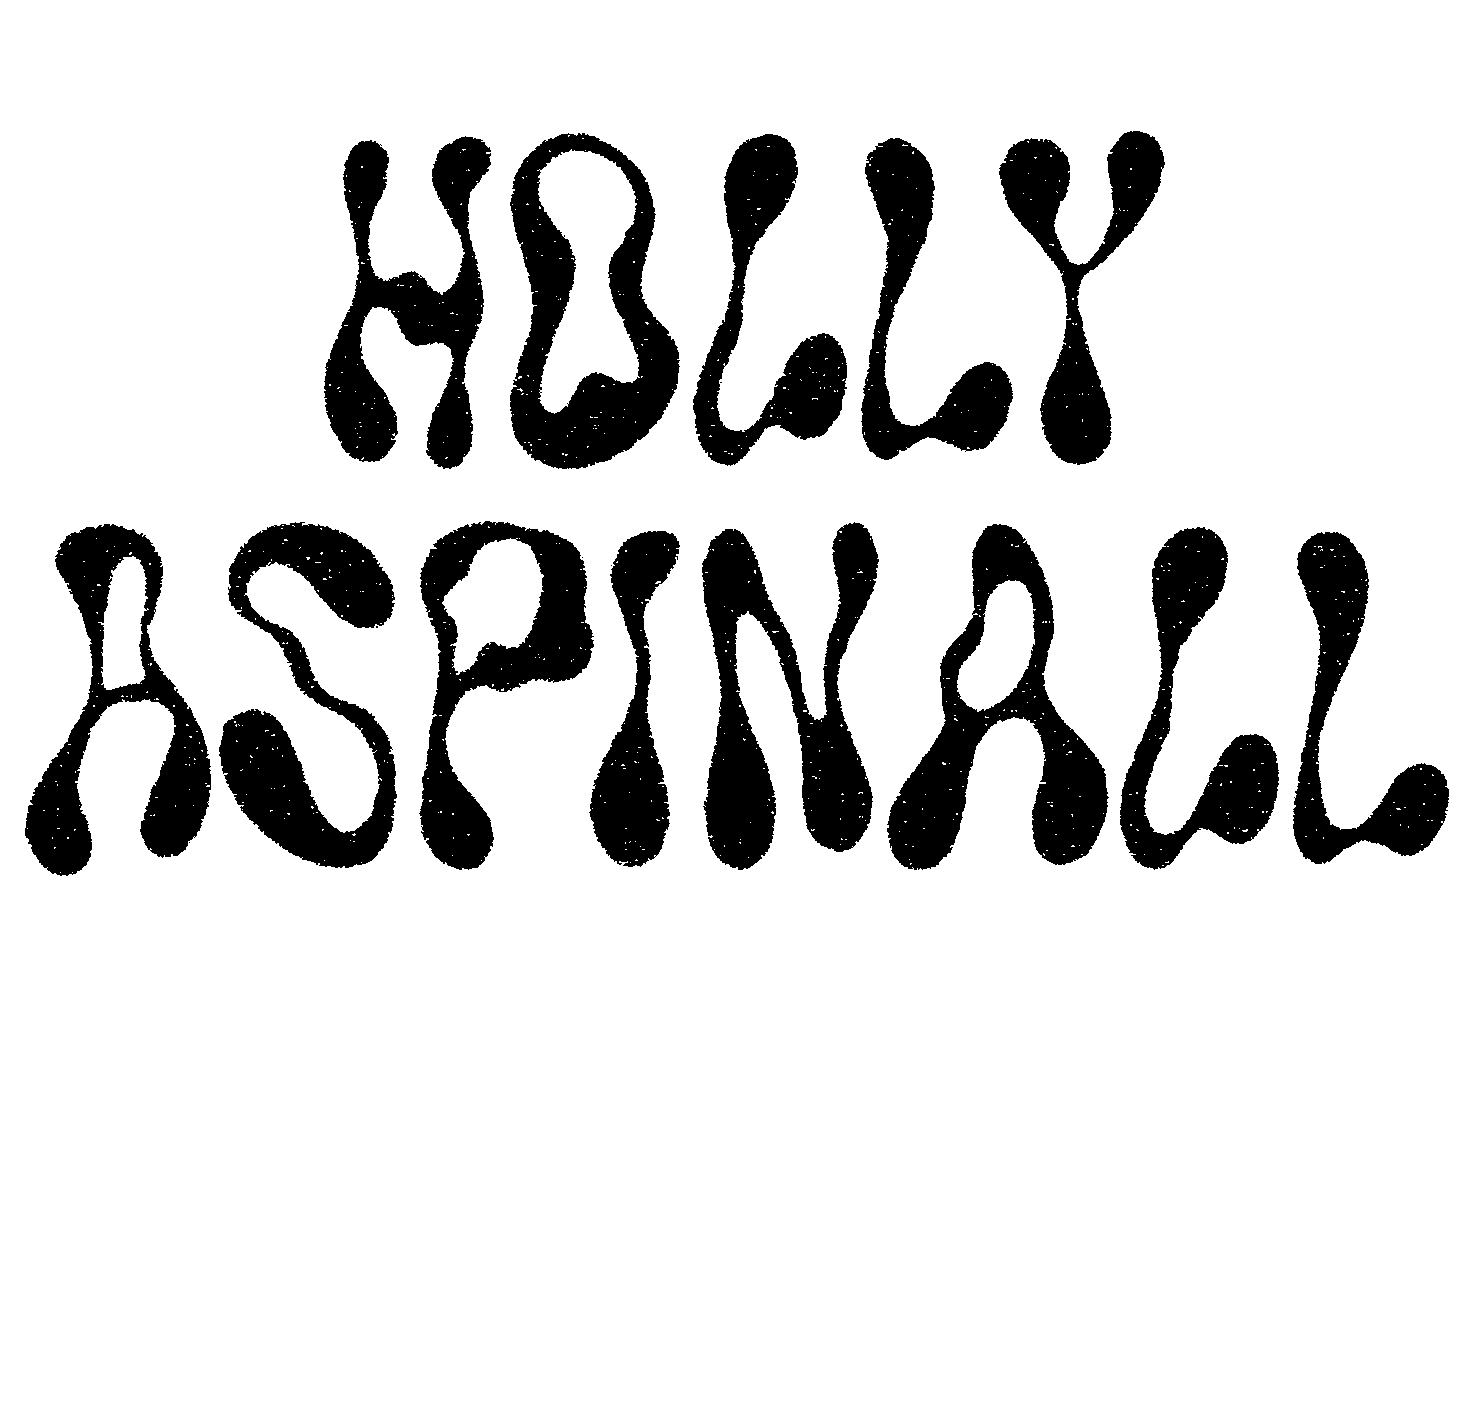 Holly Aspinall